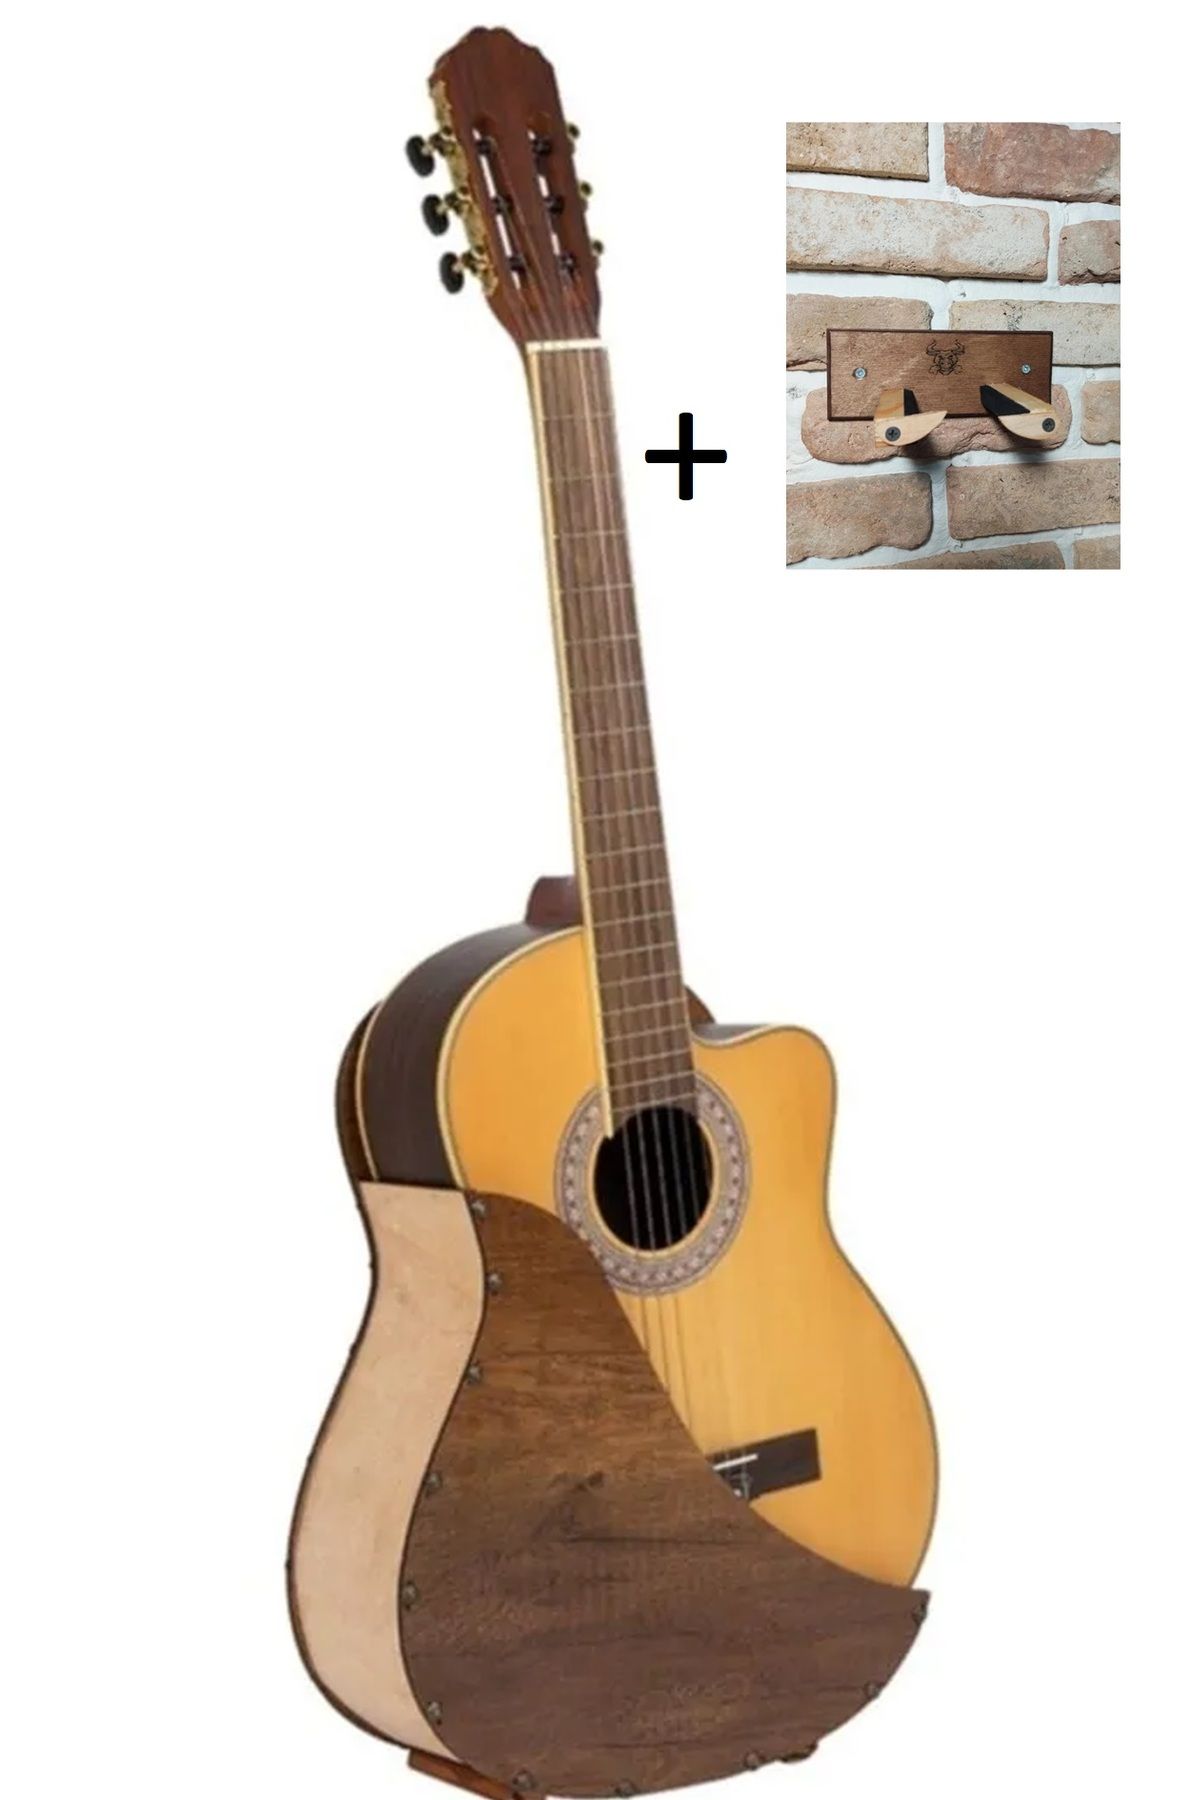 Donizetti Ahşap Gitar Standi Özel Tasarım Duvar Askı Standı Hediye